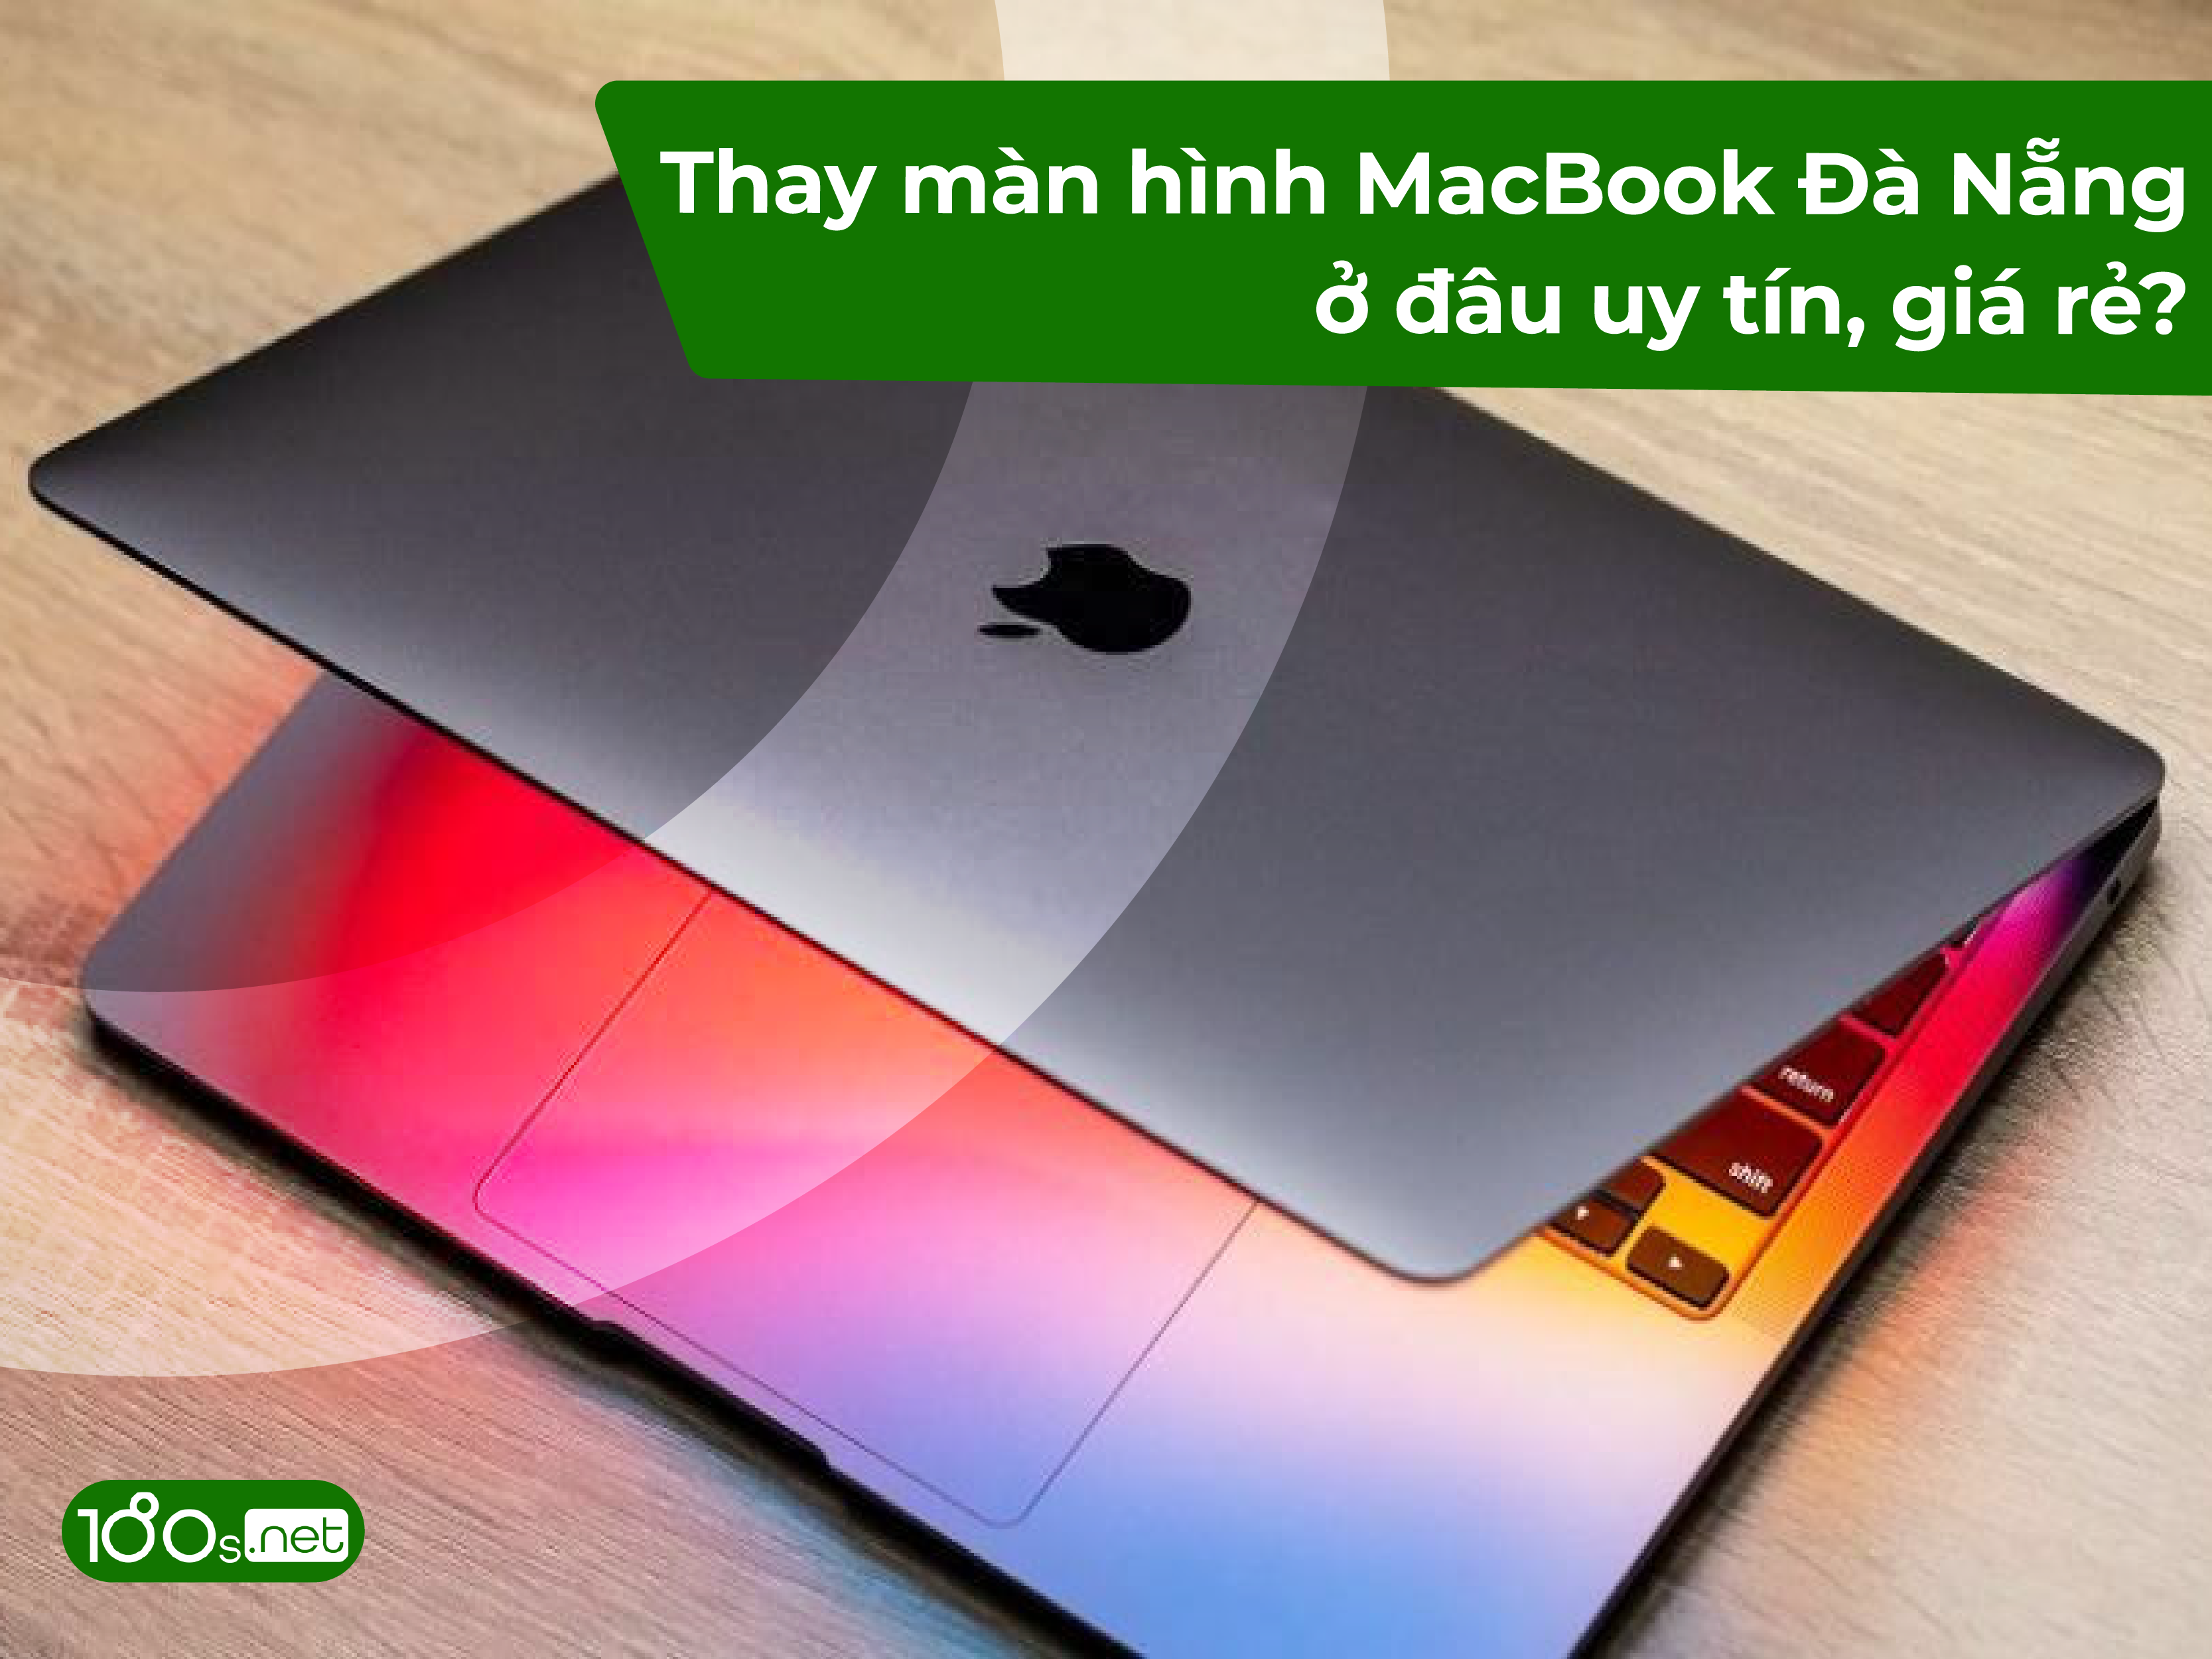 Thay màn hình macbook ở đâu Đà Nẵng giá rẻ, uy tín